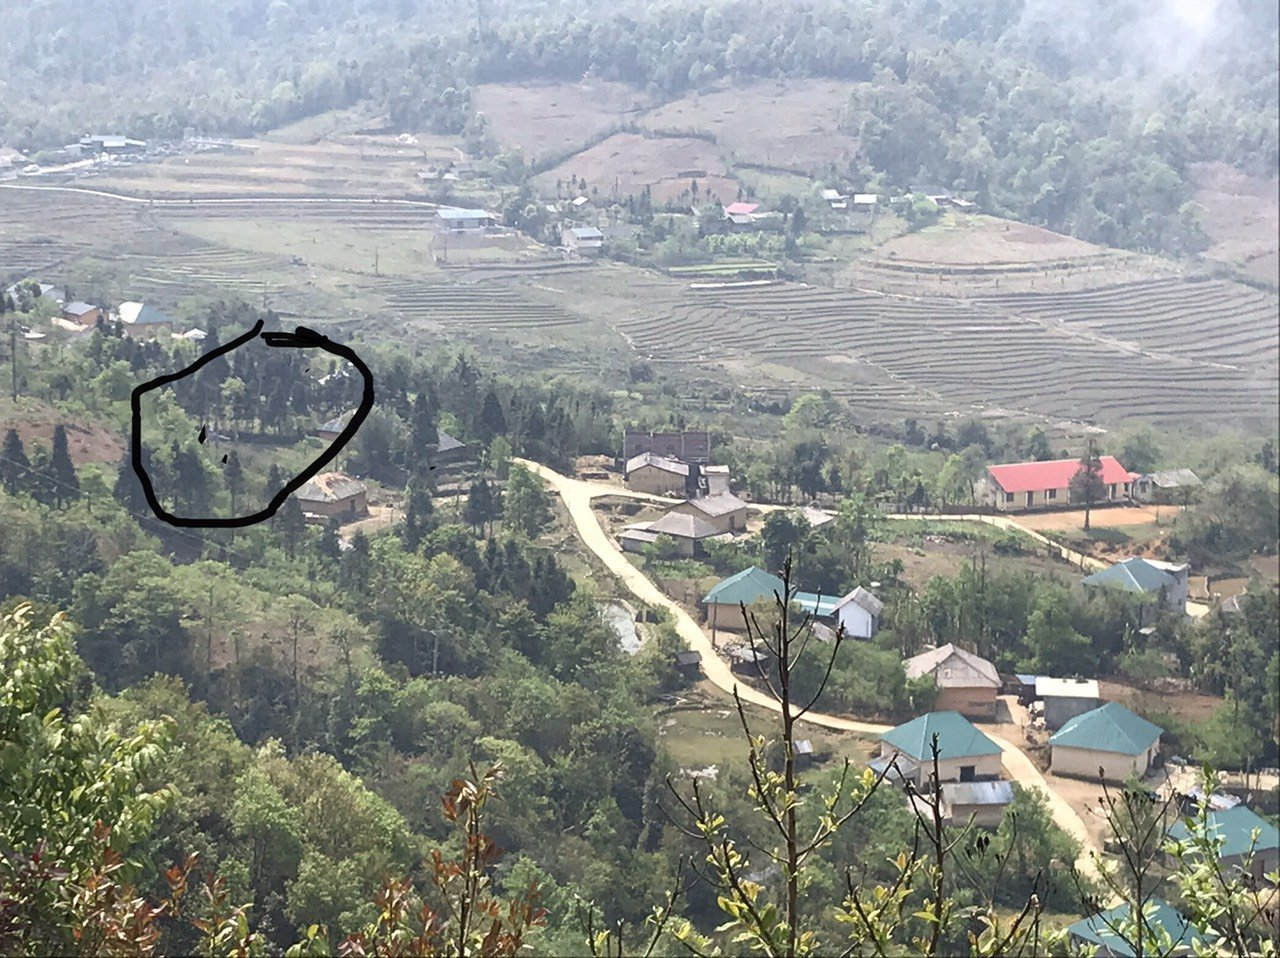 Bán mảnh đất thôn Mò Phú Chảii - Y Tý - Bát Sát, DT 655m, bao đủ trích lục huyện, giá 1tr/m2. Ms Lan 0988322328